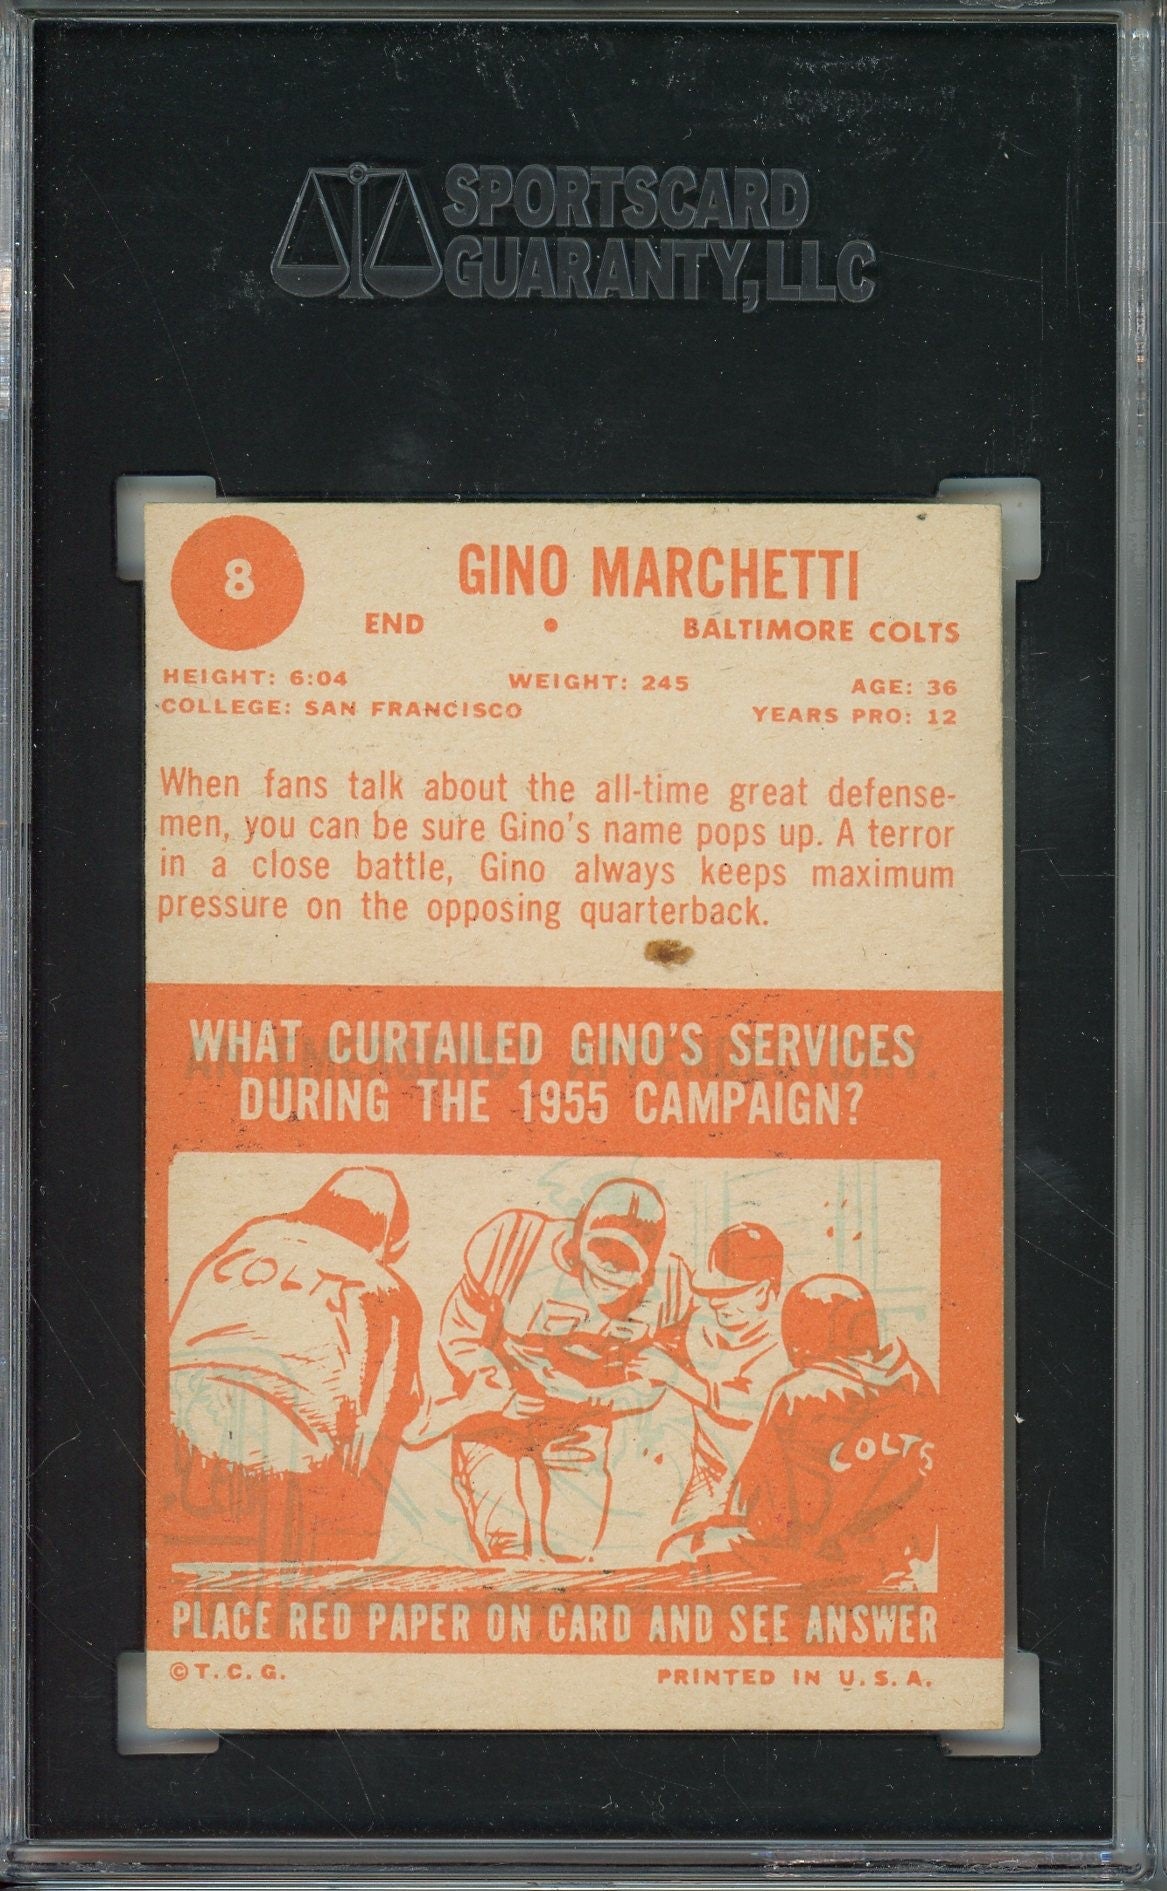 1963 TOPPS GINO MARCHETTI AUTO CARD SGC AUTHENTIC (083)